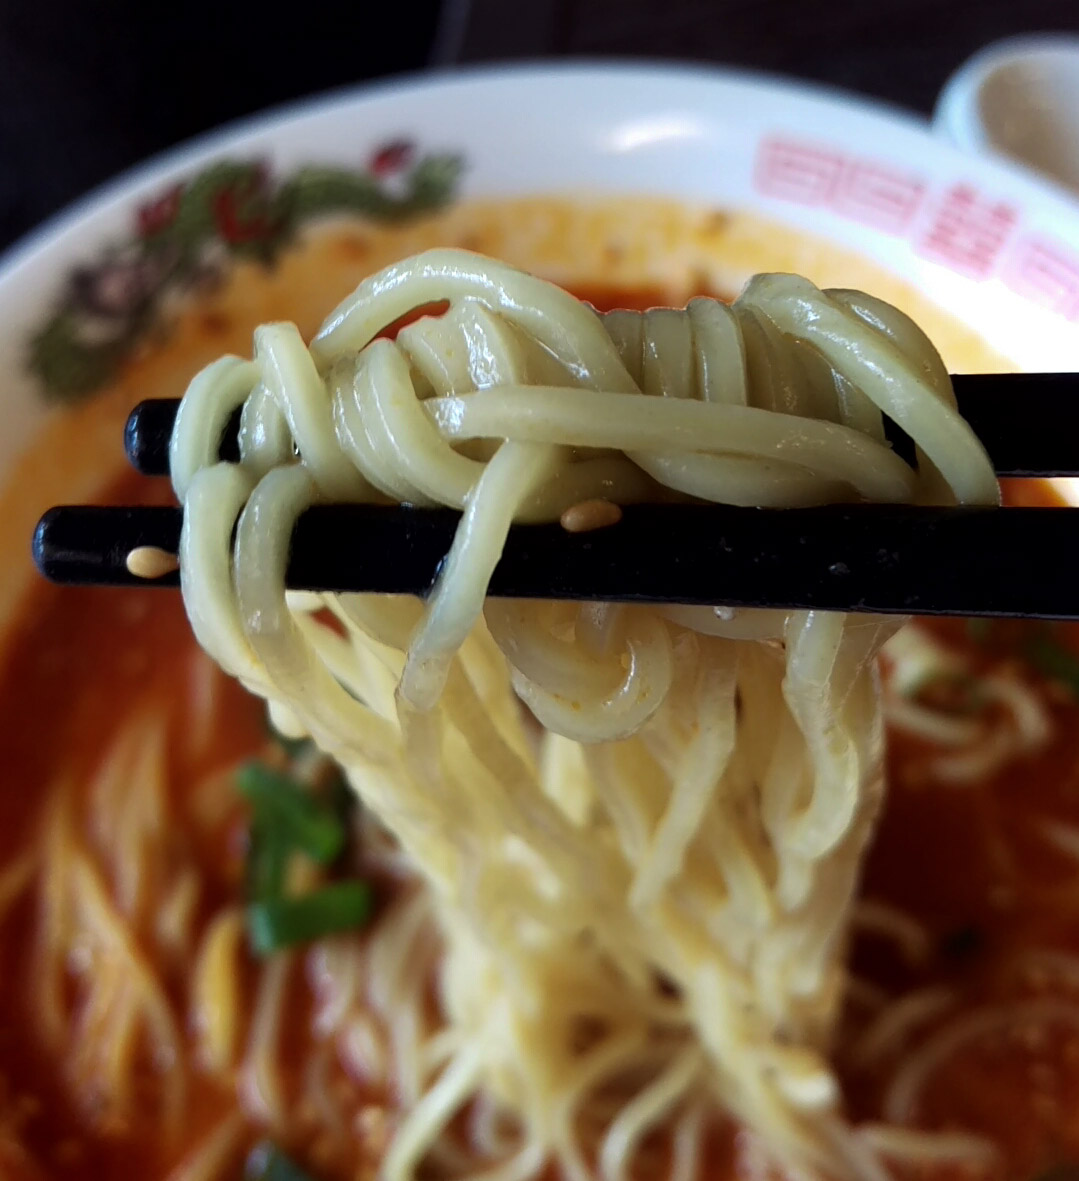 お箸は普通の1.2倍くらいの太さ。光沢のある太麺。ラーメンに使われるような麺